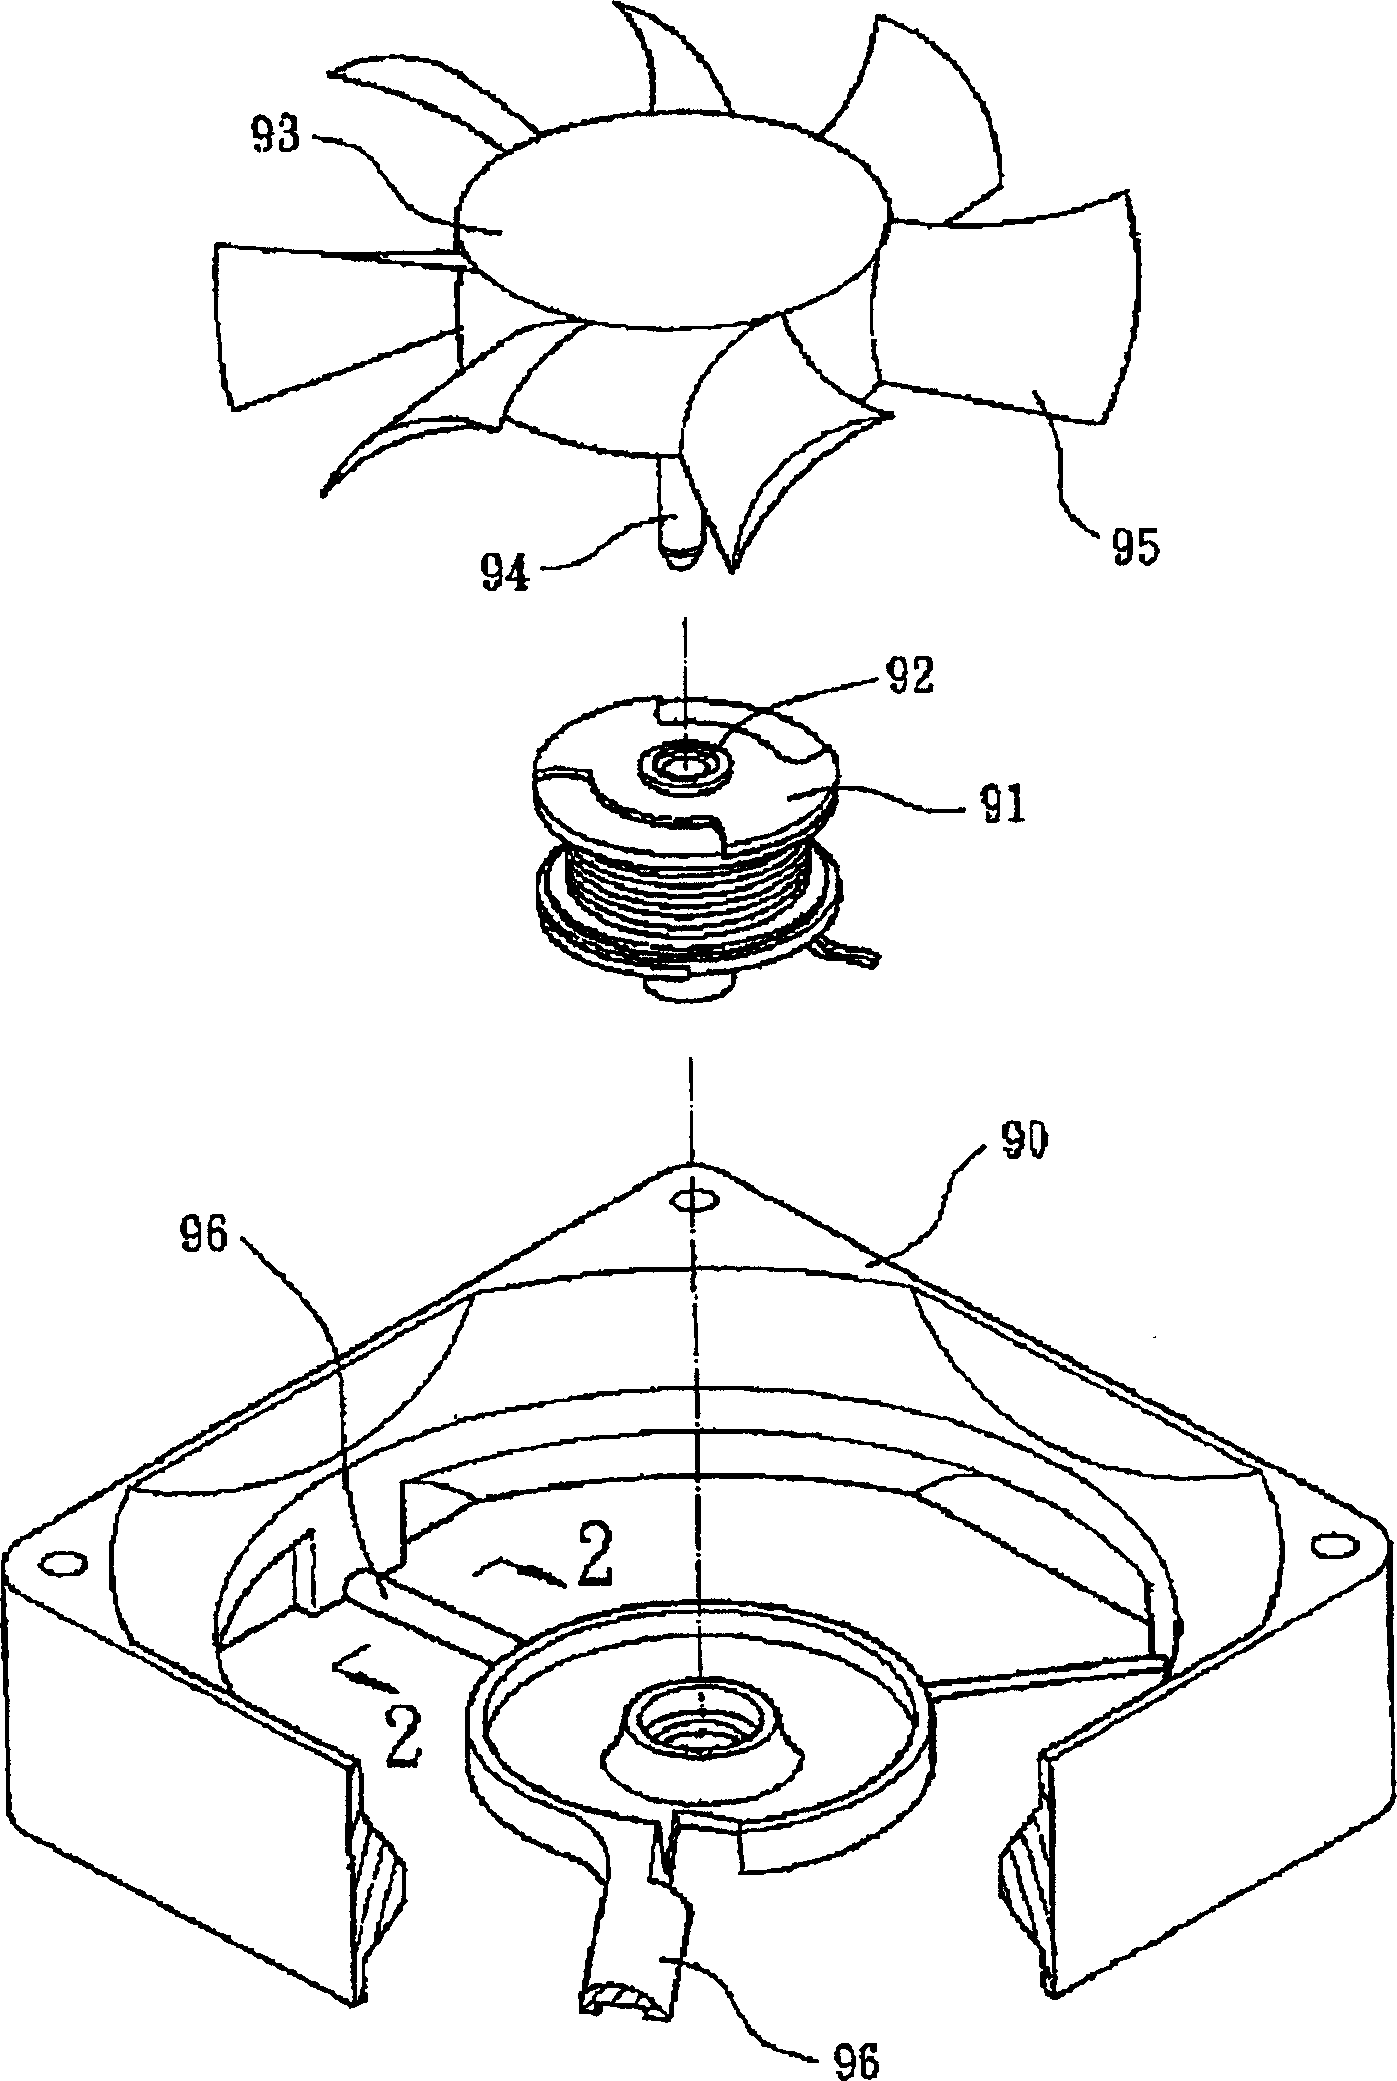 Radiating fan and base of fan frame